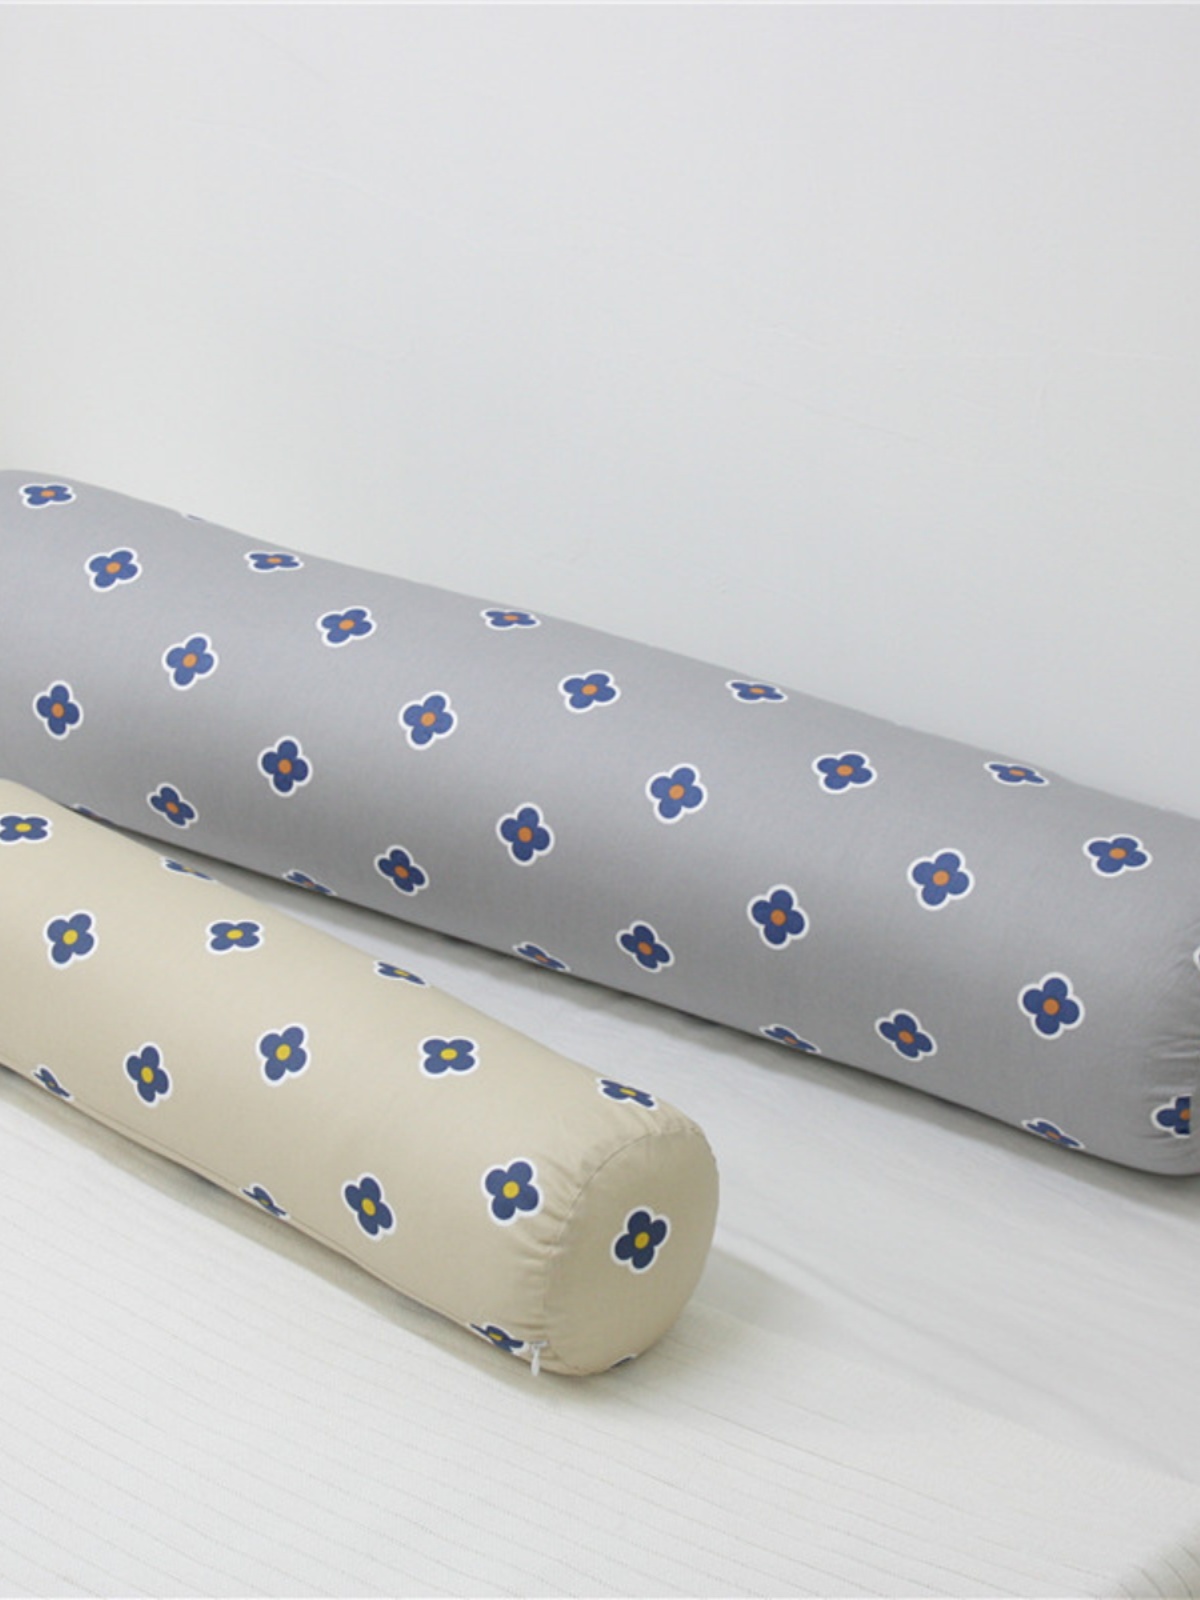 柔軟羽絲棉填充圓柱形夾腿枕多款圖案選擇簡約現代風格適用臥室